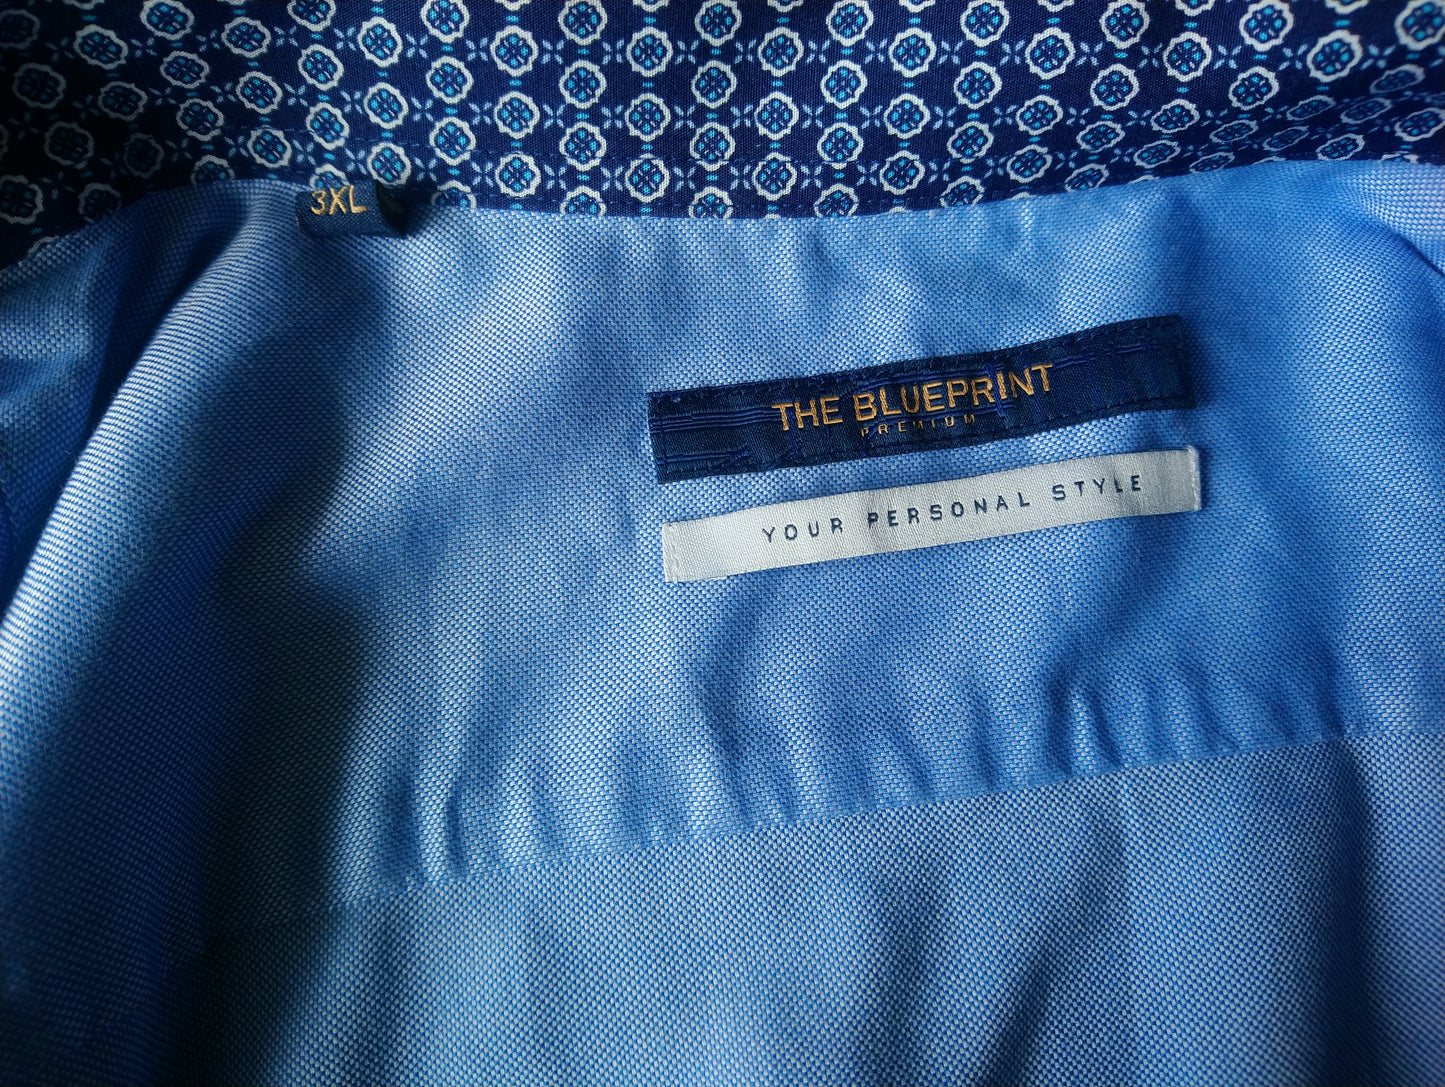 Das blau gedruckte Hemd. Blaues weißes Motiv. Größe 3xl / xxxl.